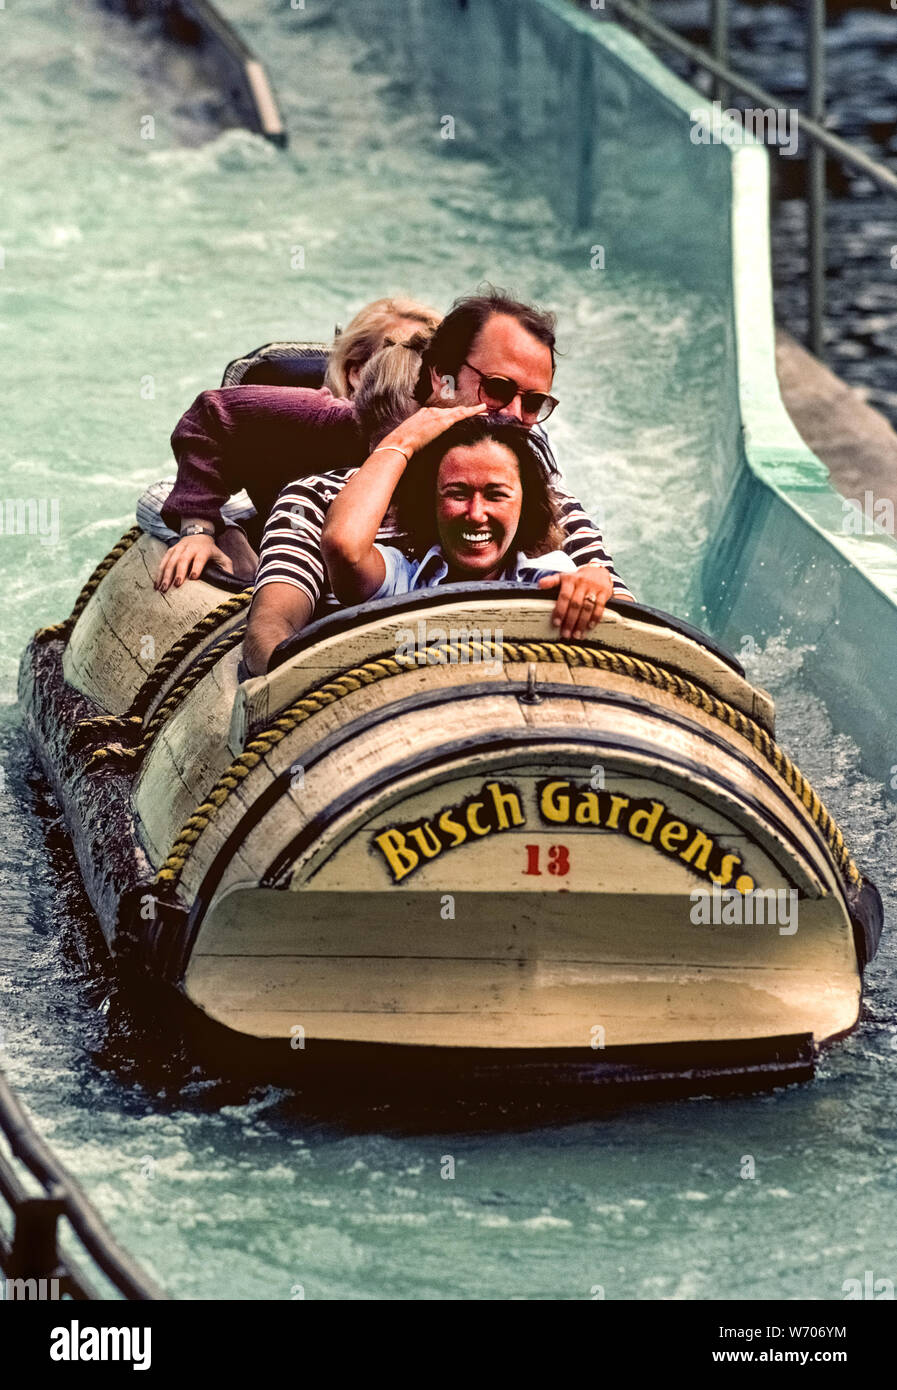 La Stanley Falls log flume ride de l'eau a longtemps été un favori de la famille à Busch Gardens, un parc aquatique et des animaux populaires à Tampa, Floride, USA. C'est old-time classic ride est une agréable alternative à la mort-défiante des promenades en montagnes russes pour lesquels le parc est maintenant connu. D'abord lancé en 1973, les quatre bateaux personne Suivez les méandres du canal à travers une jungle luxuriante avant de plonger vers un 40 pieds (12 mètres) splashdown qui souvent amortit les passagers mais pas leurs esprits. Banque D'Images